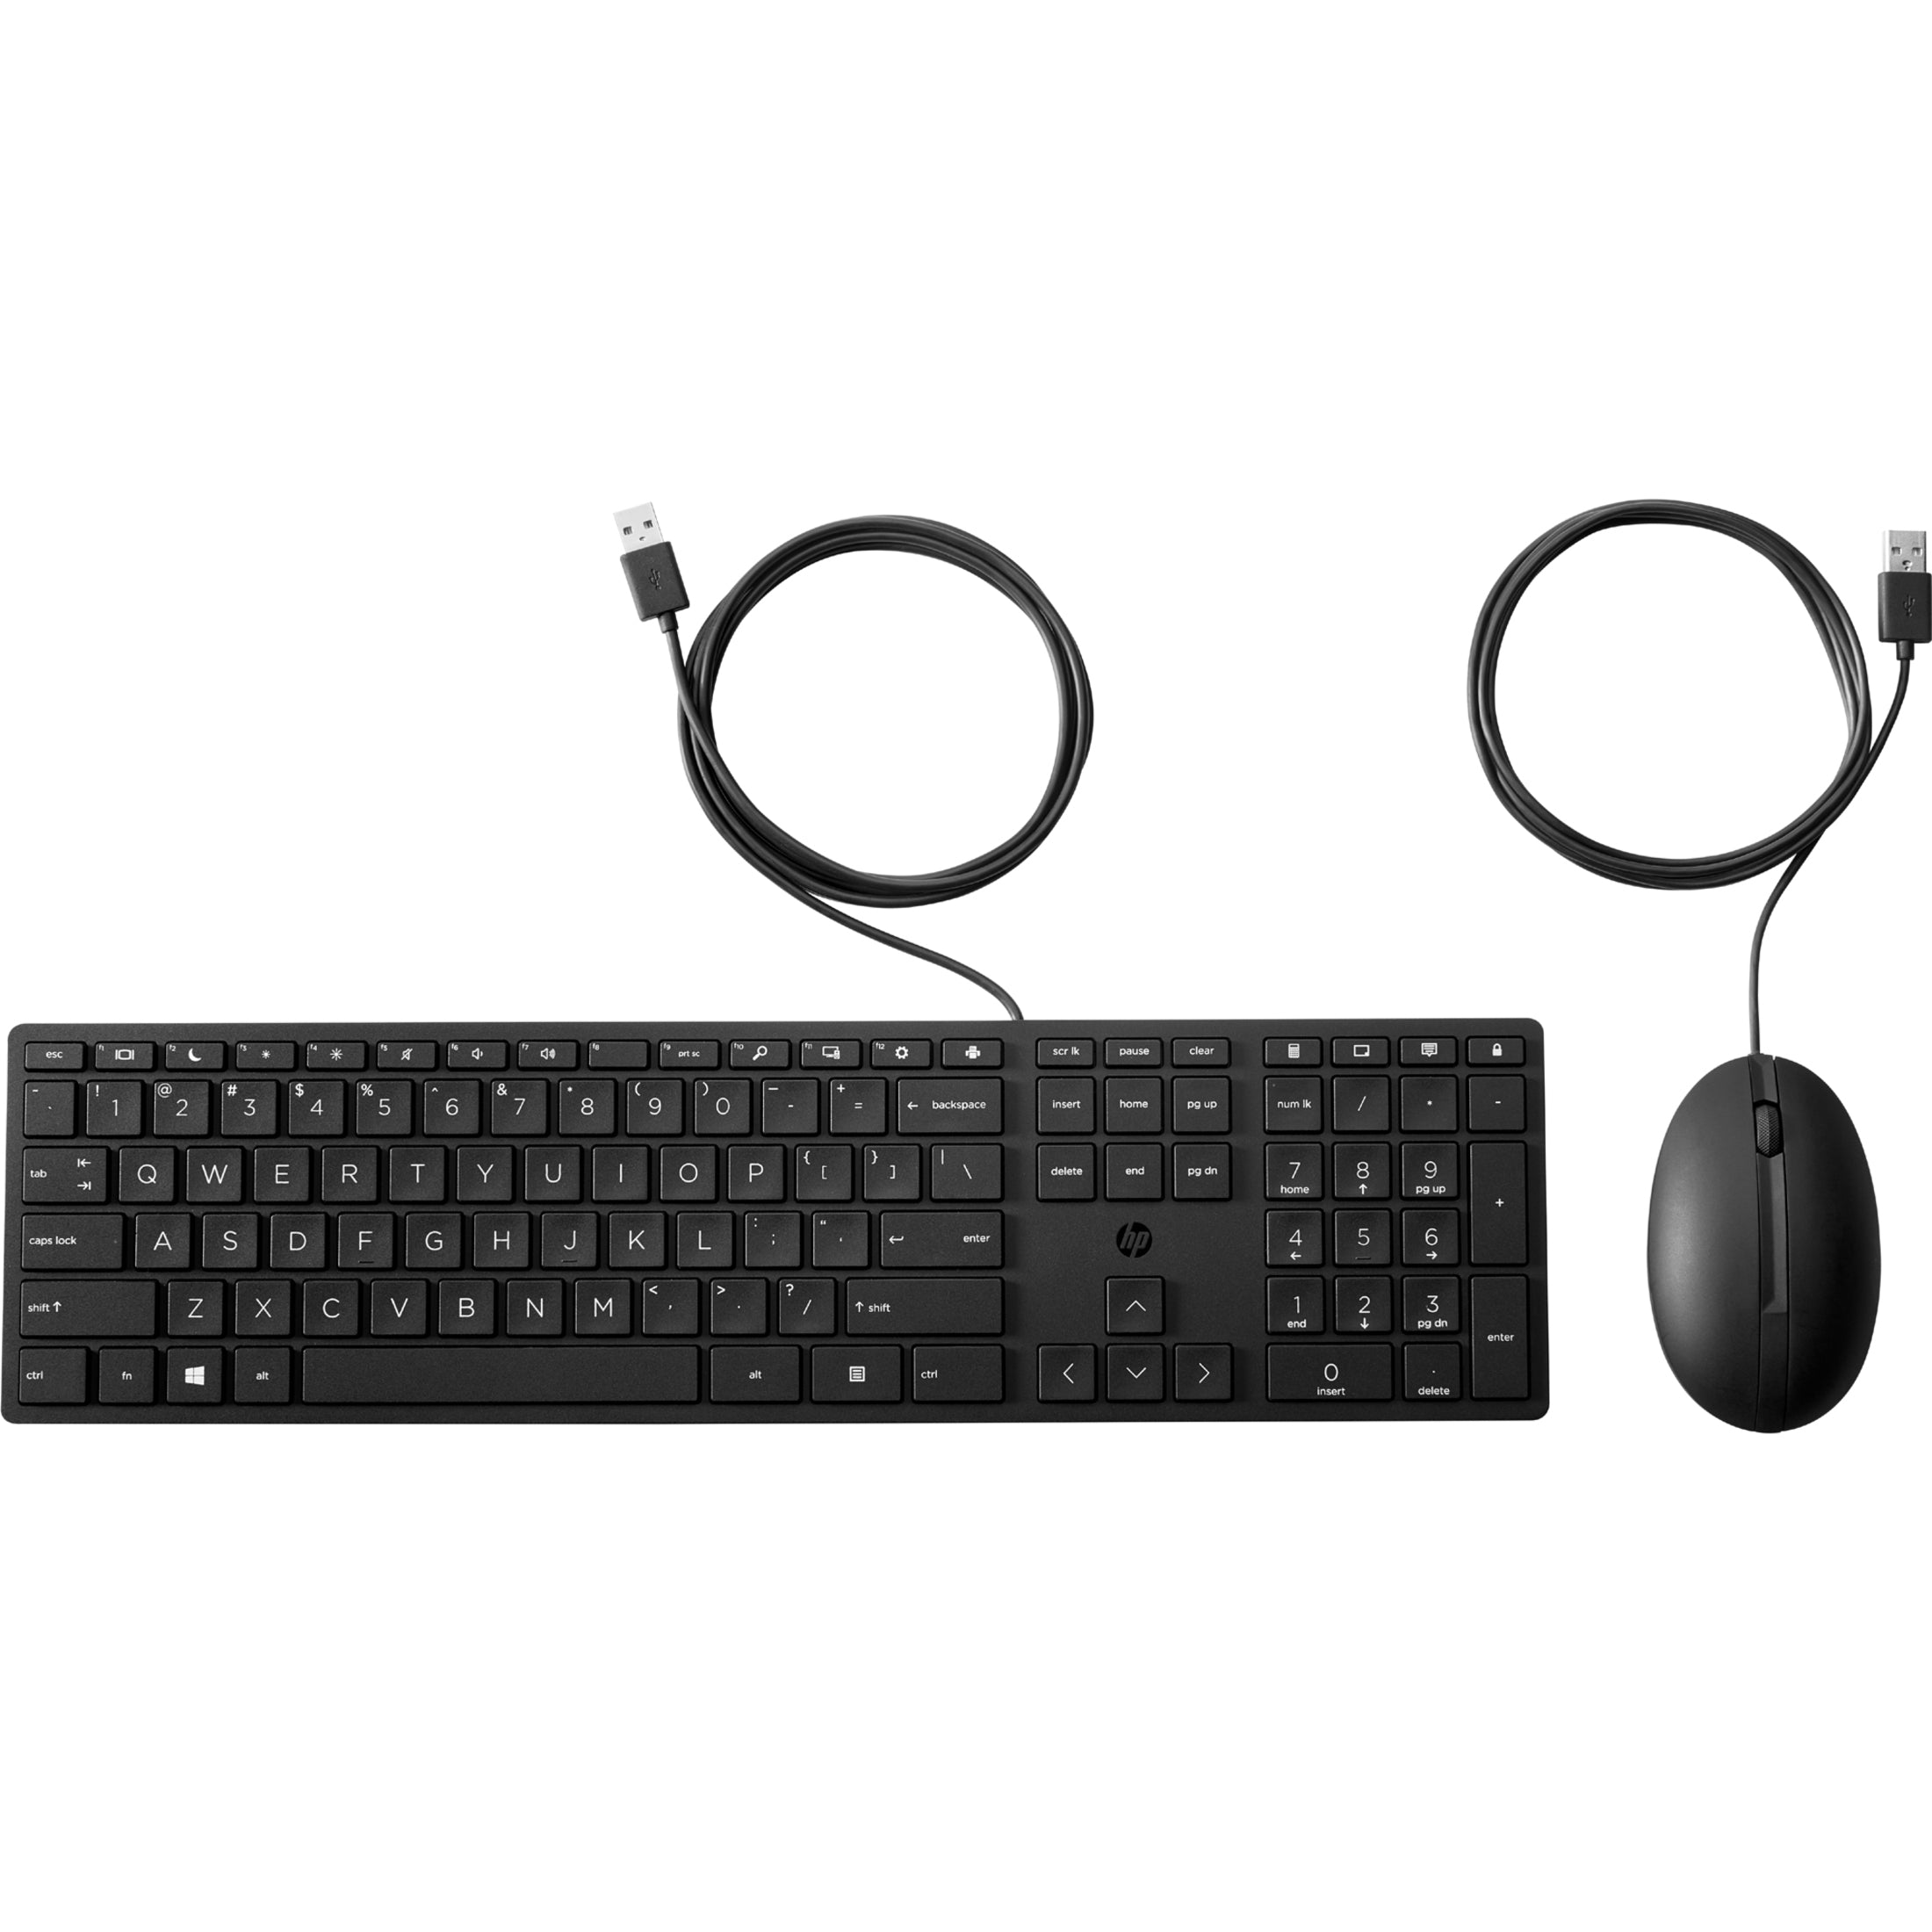 HP Wired Desktop 320MK Mouse and Keyboard, Quiet Keys, LED Indicator, Plug & Play, Adjustable Tilt, Low-profile Keys